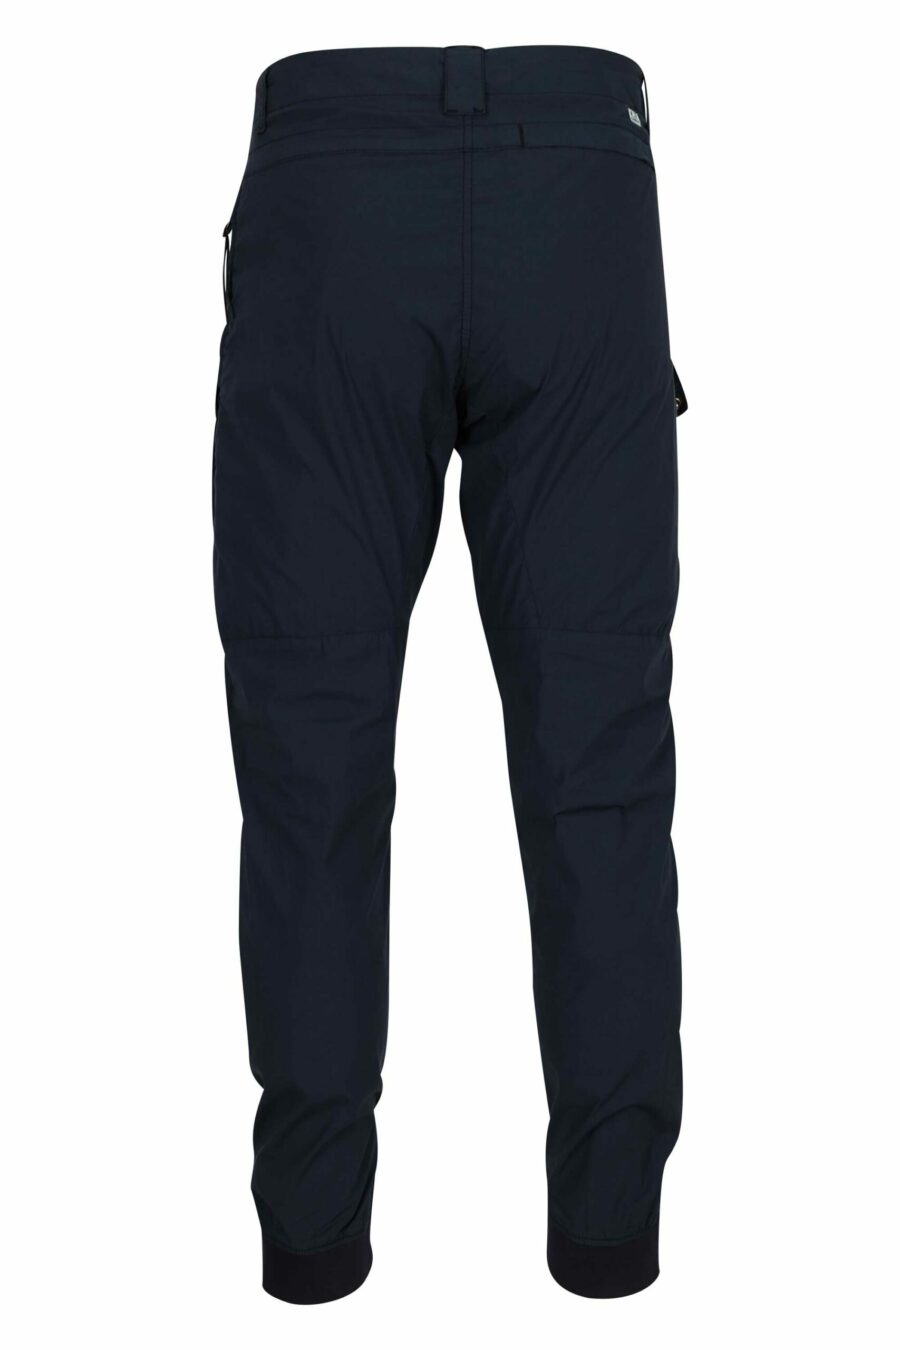 Pantalon bleu foncé avec poches avant et lentille mini-logo - 7620943806397 1 à l'échelle